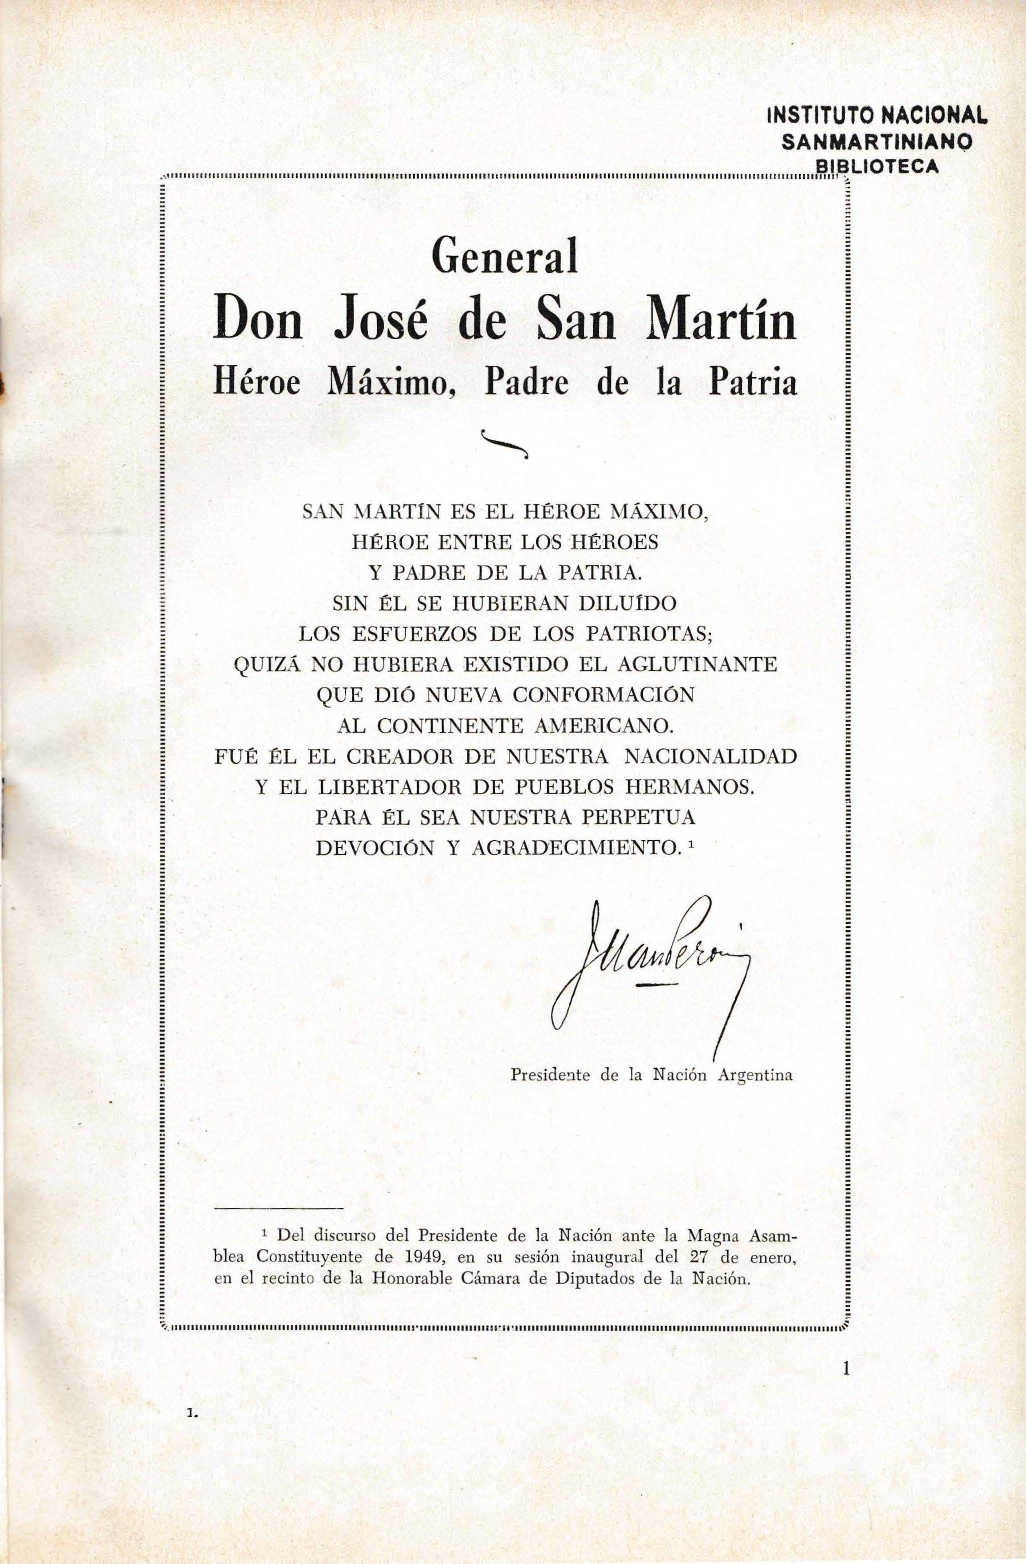 Perón inaugura la sede actual del Instituto Nacional Sanmartiniano